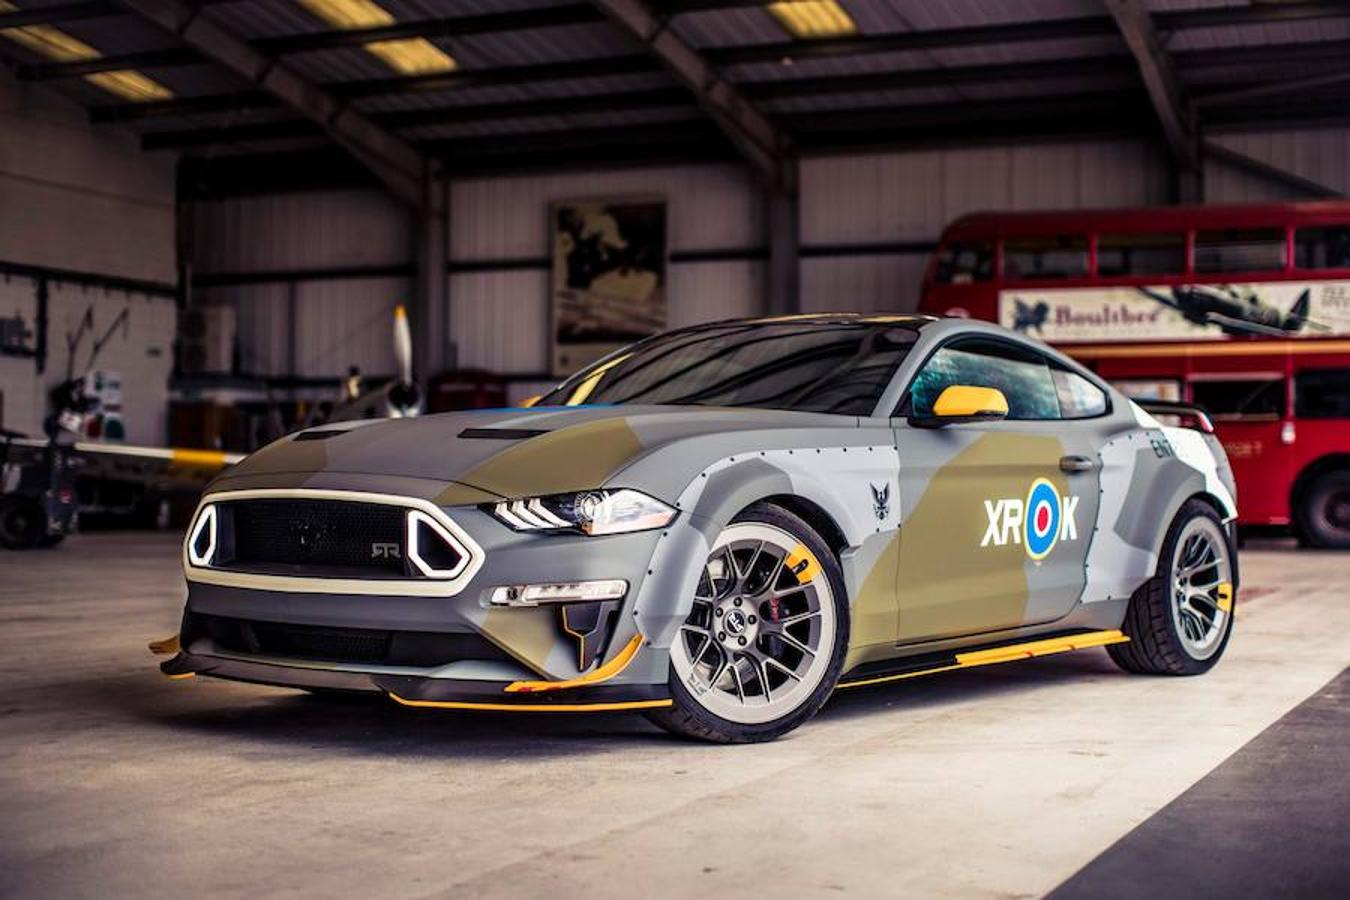 Ford. Hoy debuta en Goodwood para conmemorar el 100 aniversario de la Royal Air Force, un Mustang GT único creado por Ford Performance y el campeón de drift Vaughn Gittin Jr. que se subastará el 26 de julio en The Gathering